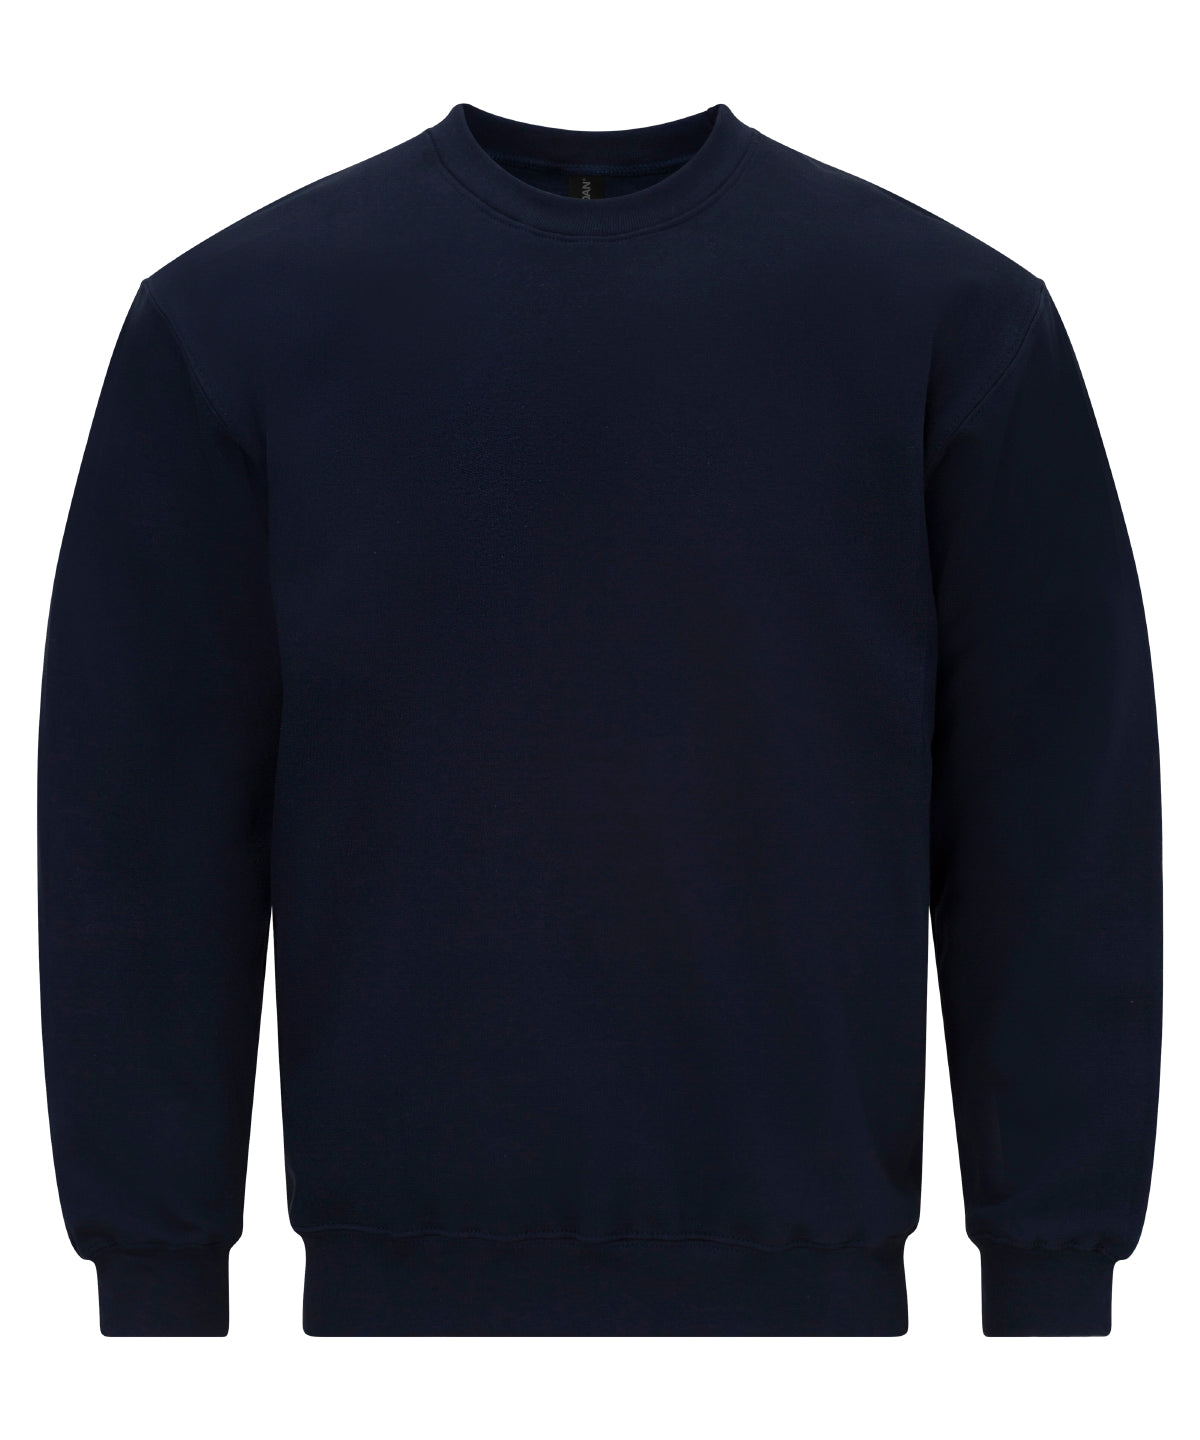 Personalised Sweatshirts - Black Gildan Softstyle™ midweight fleece adult crew neck